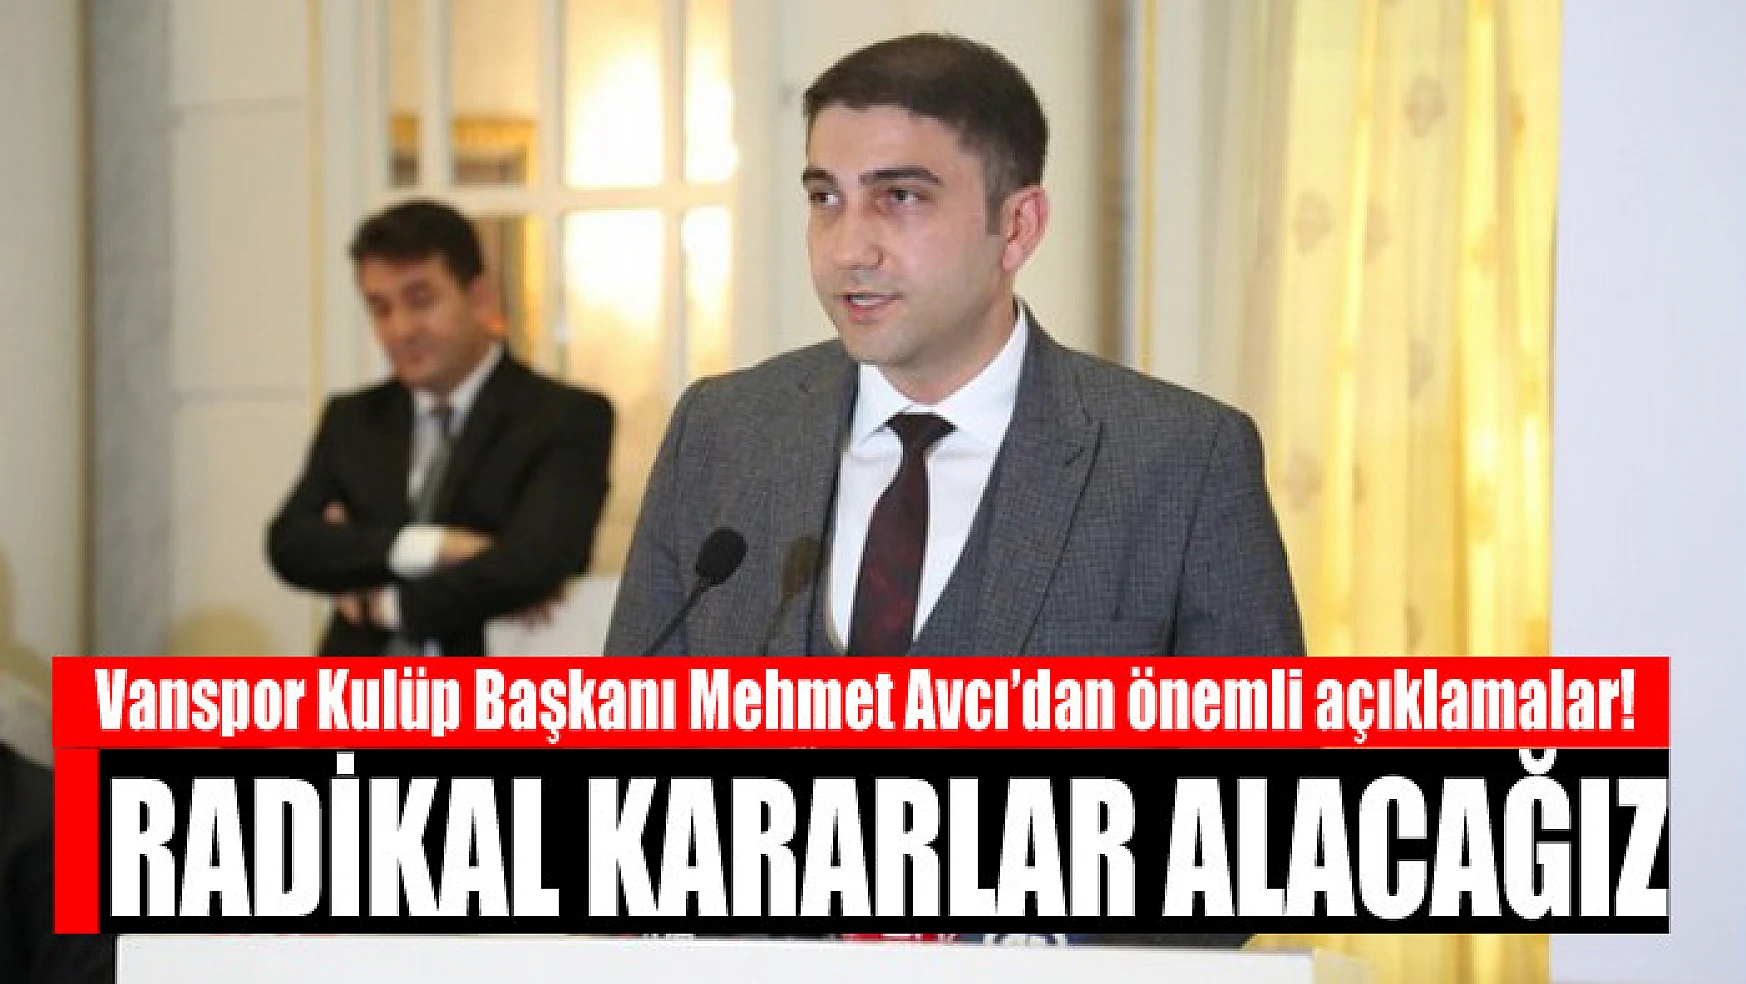 Vanspor Kulüp Başkanı Mehmet Avcı'dan önemli açıklamalar: Radikal kararlar alacağız